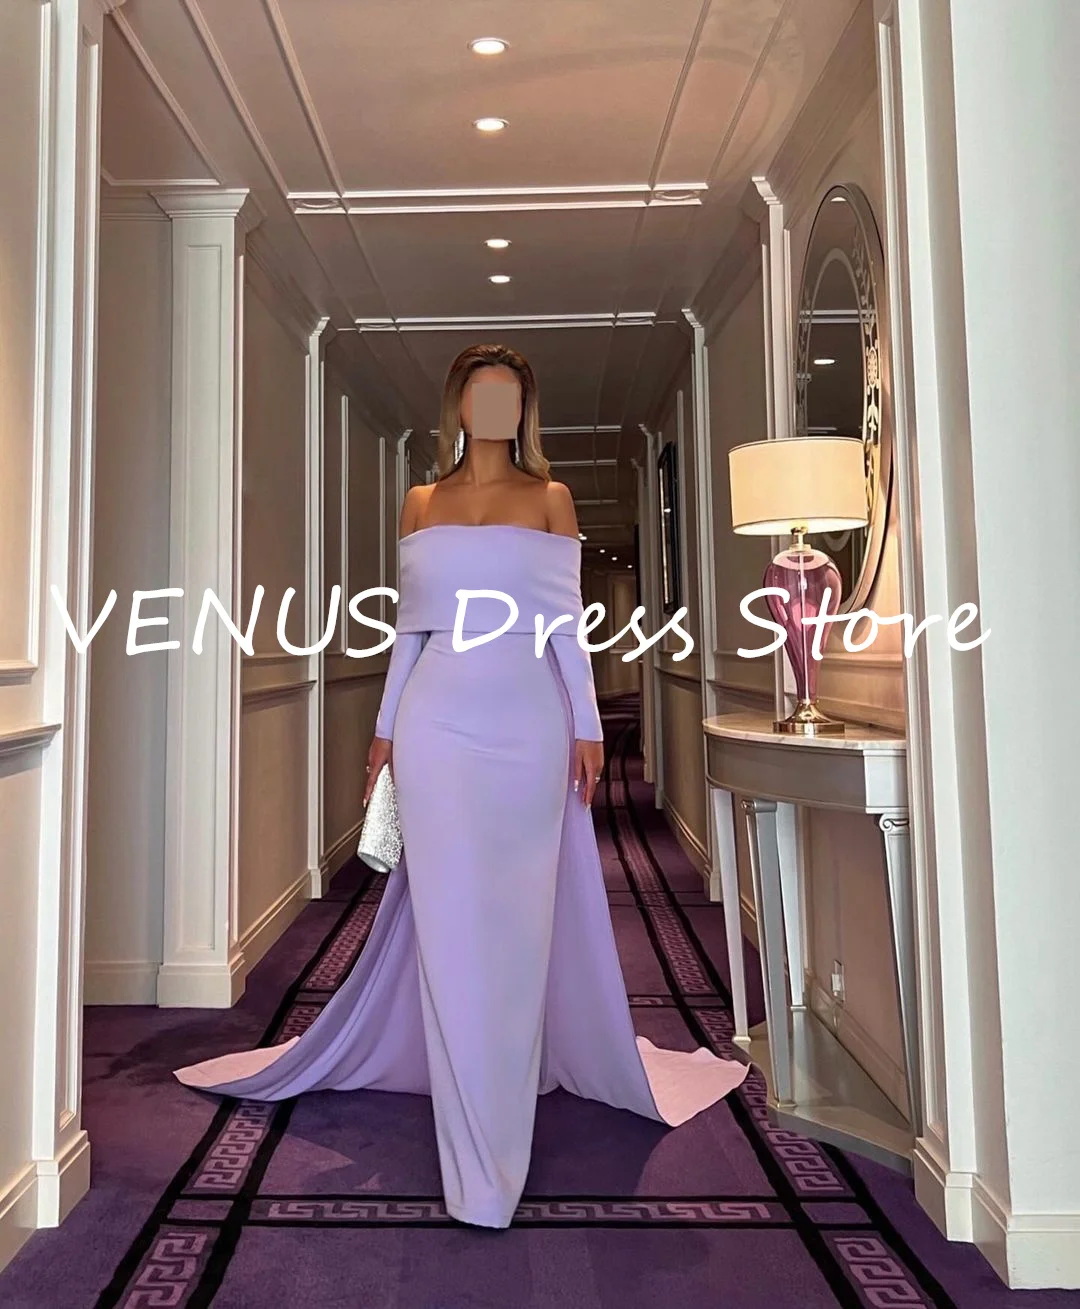 

VENUS Formal occasion dresses vestidos para eventos especiales Elegant and pretty women's dresses Long dresses